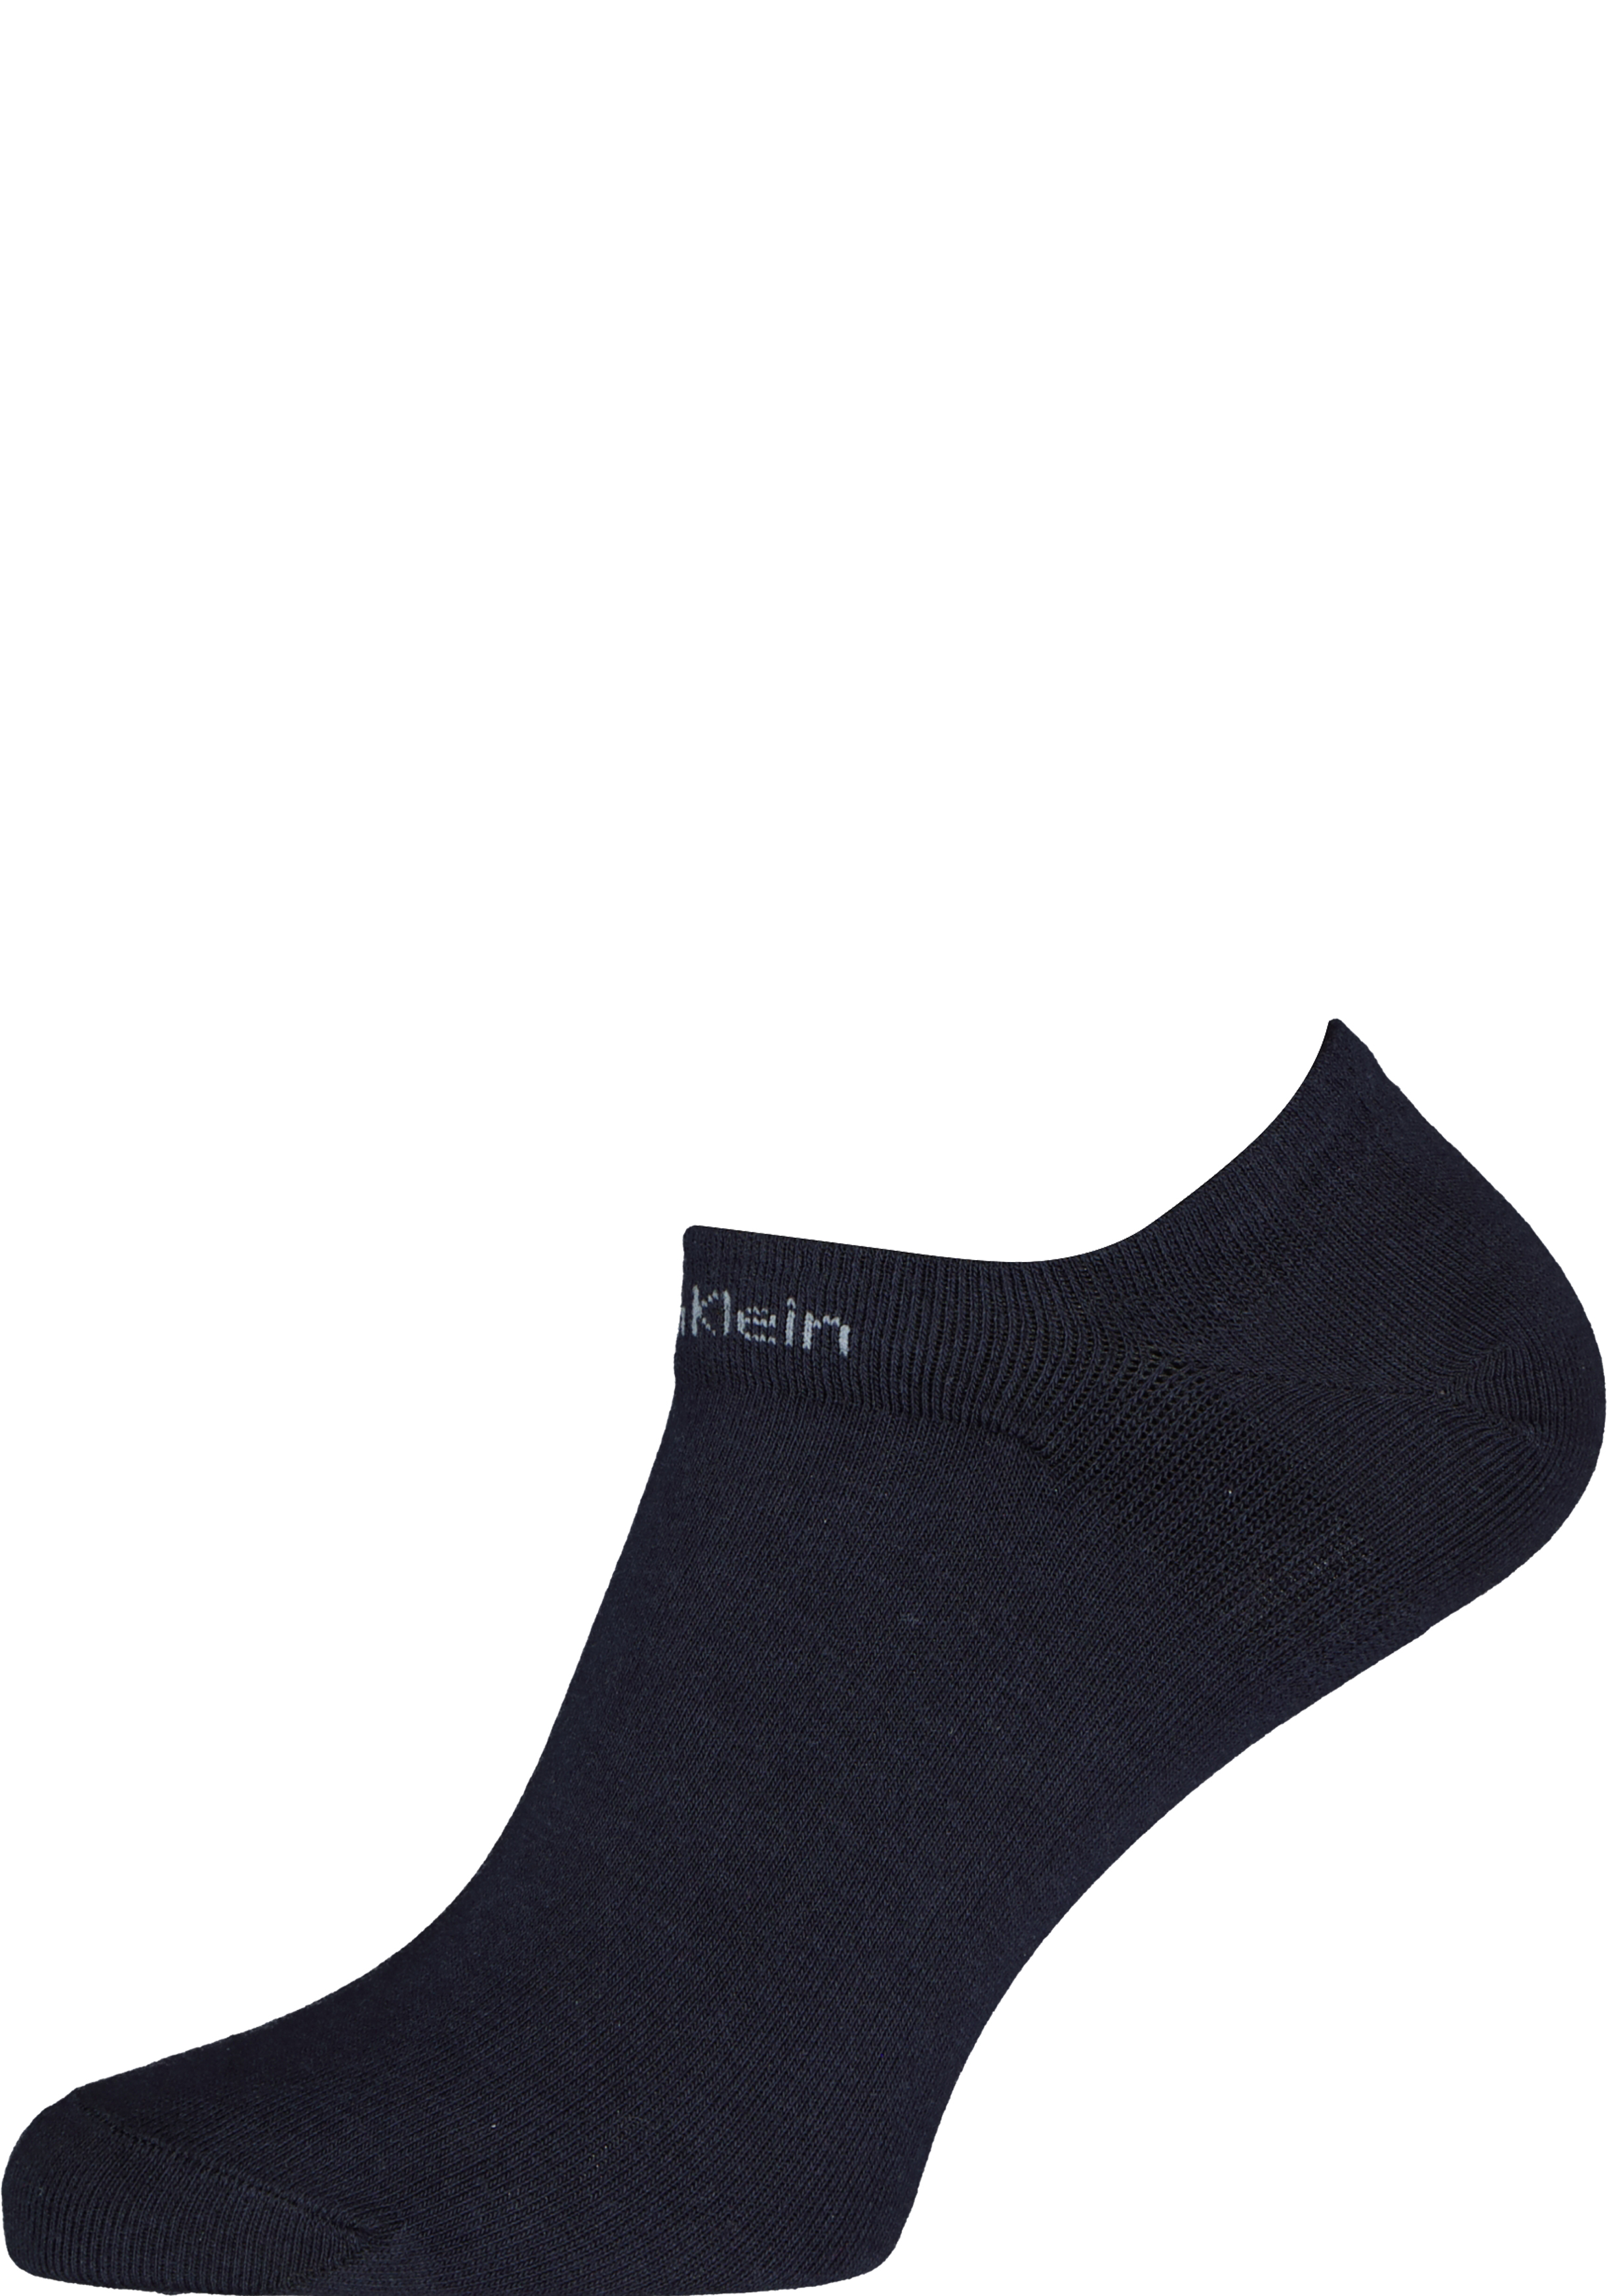 Calvin Klein herensokken Owen (3-pack), onzichtbare vochtregulerende sokken, donkerblauw